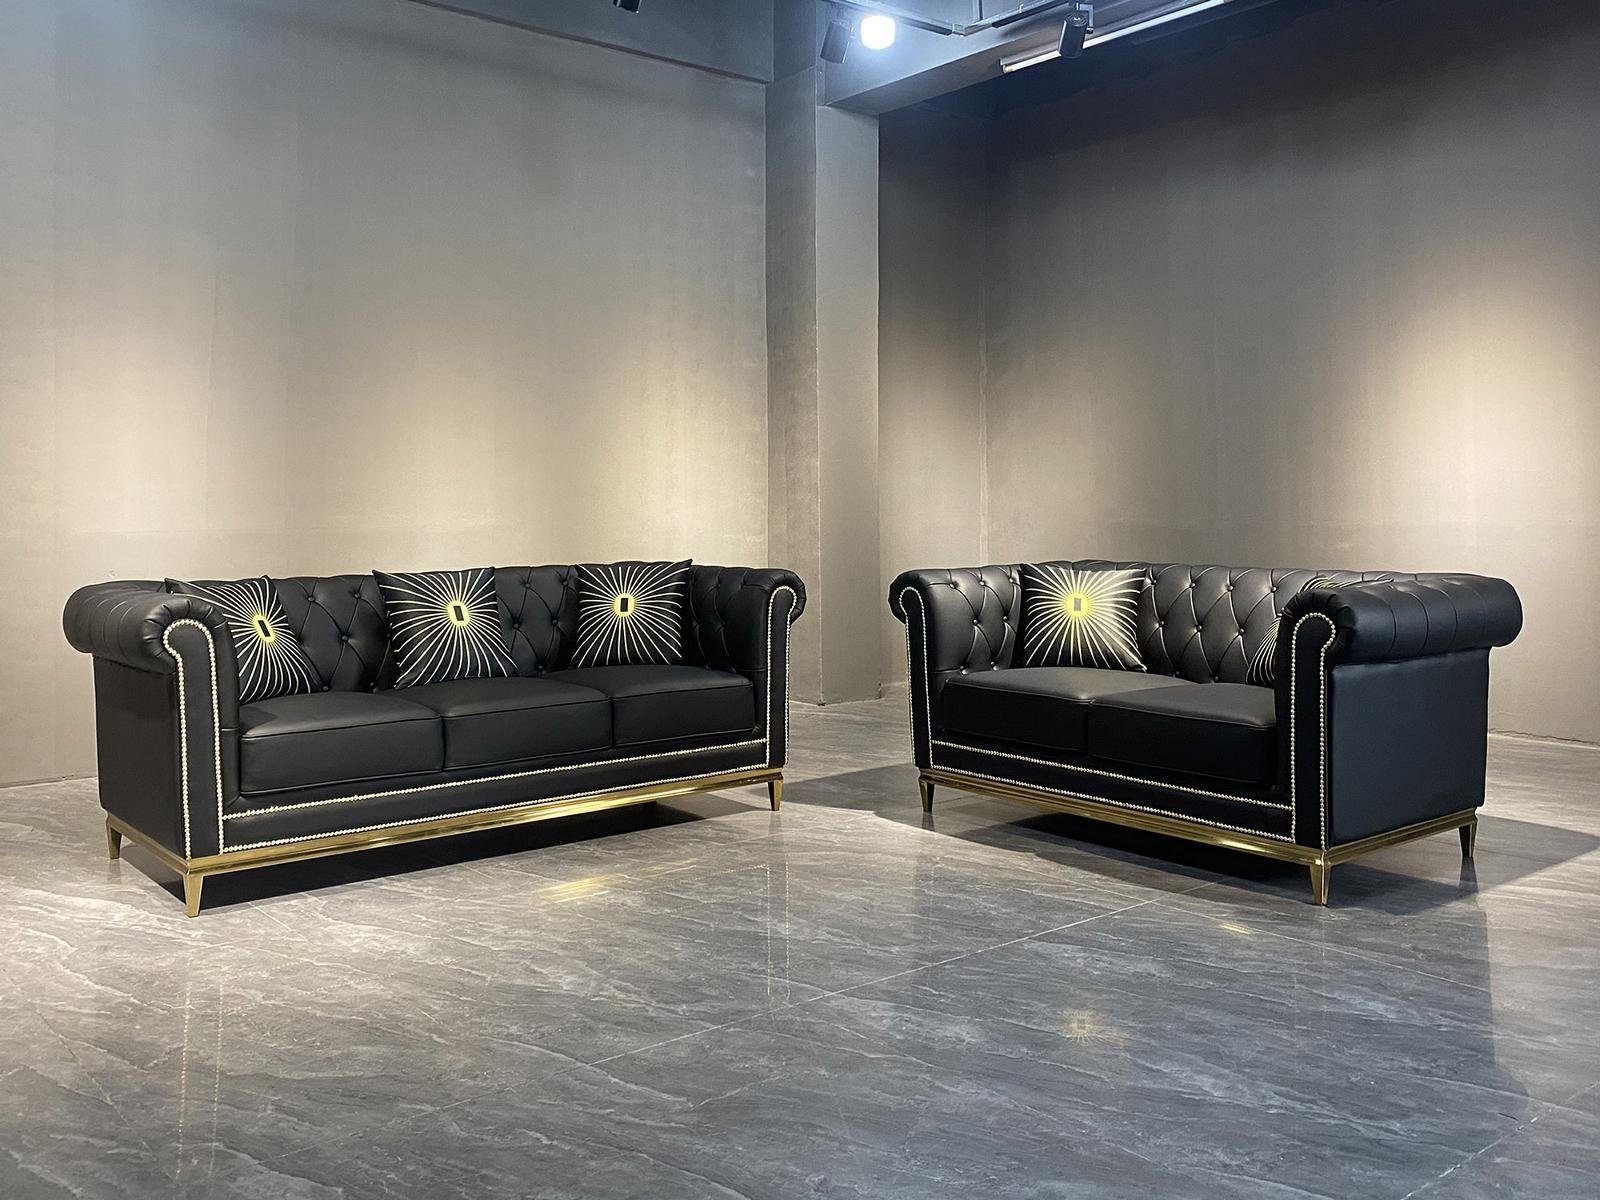 JVmoebel Sofa Moderne Chesterfield luxus Couchgarnitur New Polstermöbel, Made in Europe